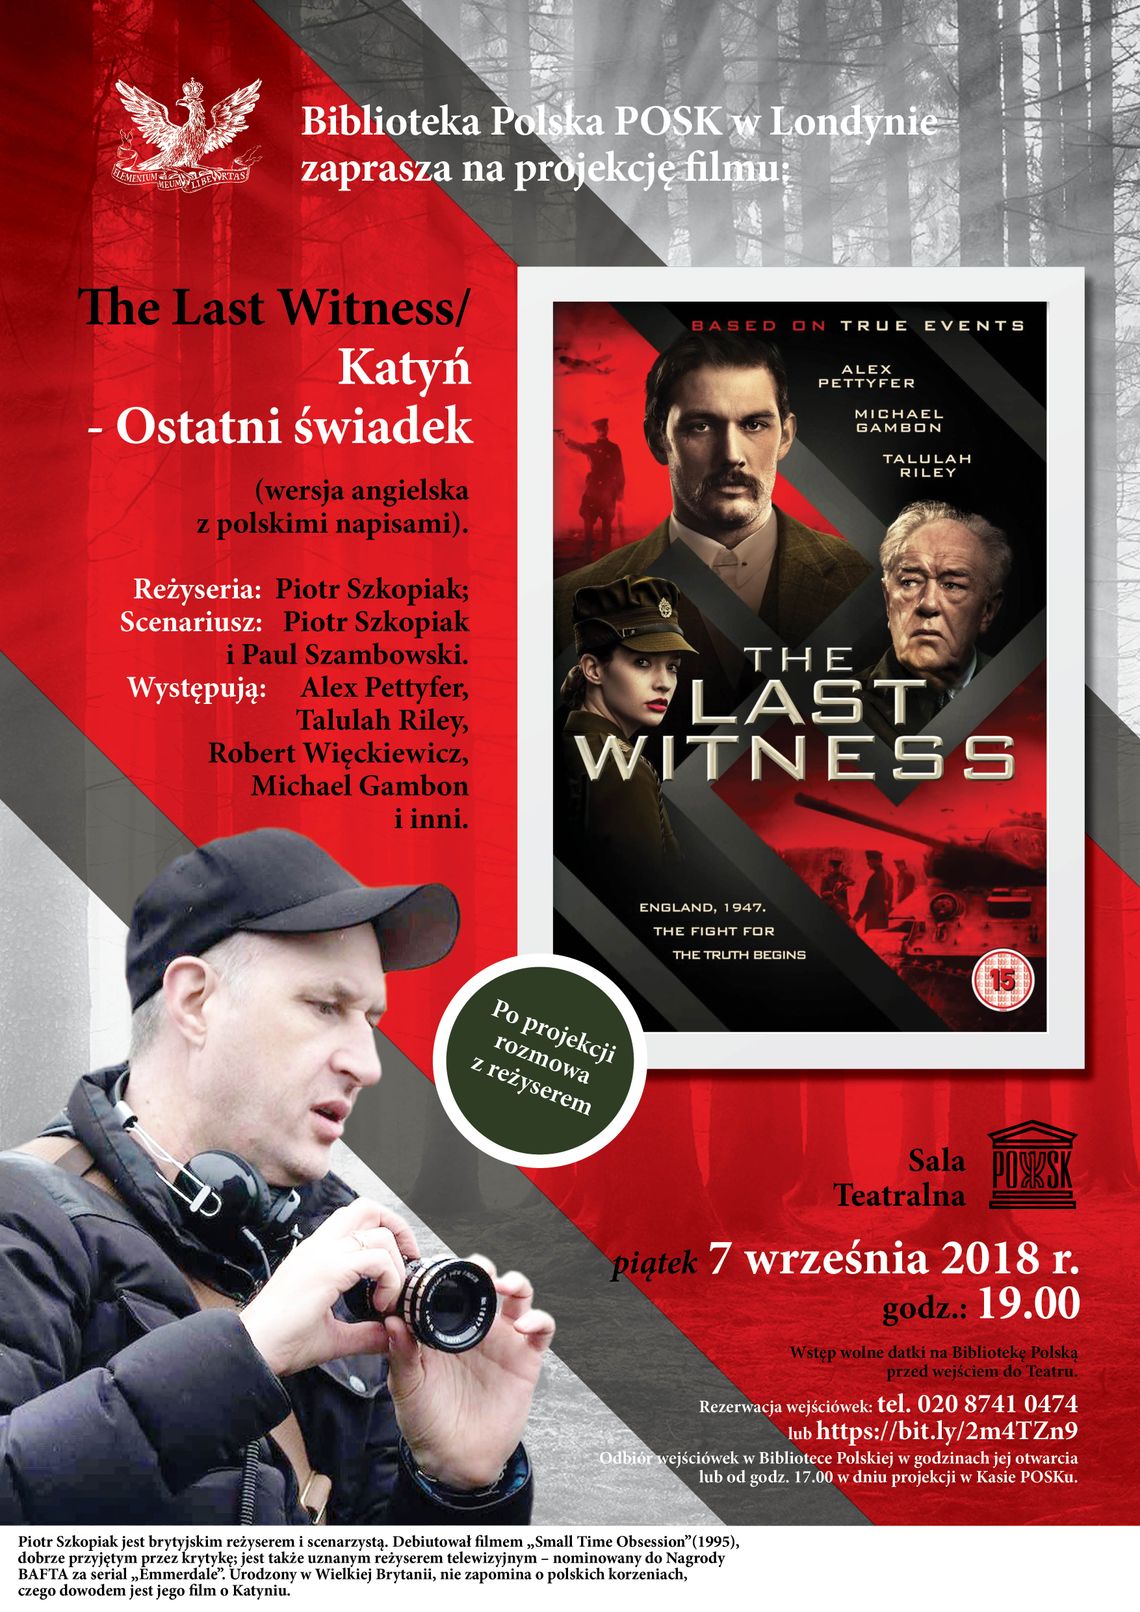 The Last Witness/ Katyń - Ostatni świadek